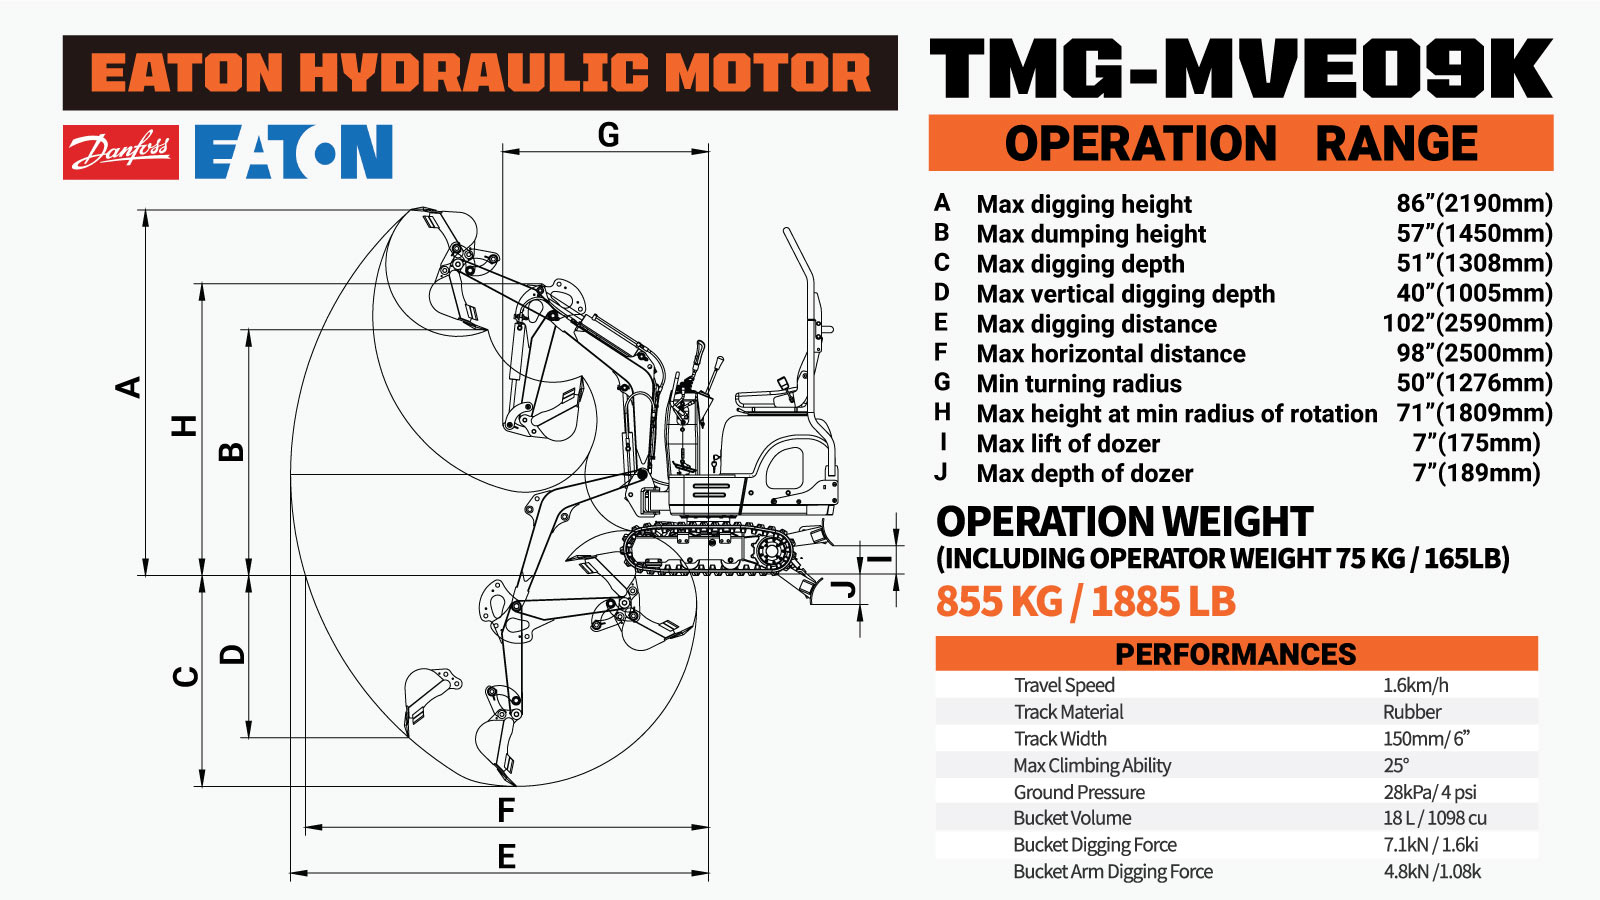 TMG Industrial Kohler Powered Mini Compact Excavator, Eaton Hydraulic Motor, 360° Rotation, 11